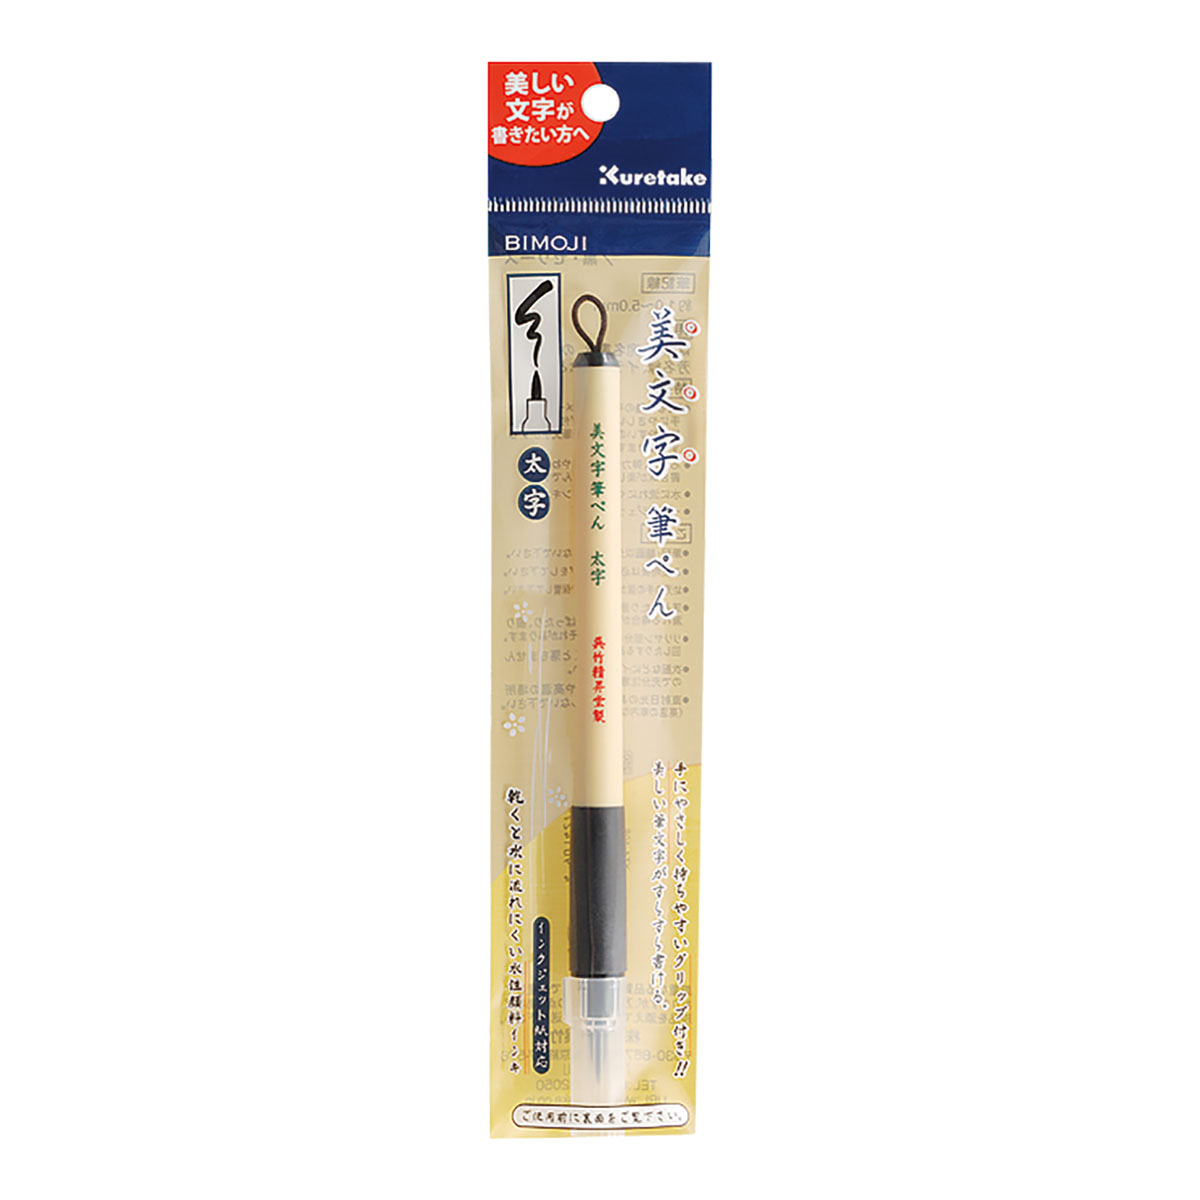 ZIG Kuretake Bimoji Fude Brush Pen, XT4 Broad 1.0-5.0 mm